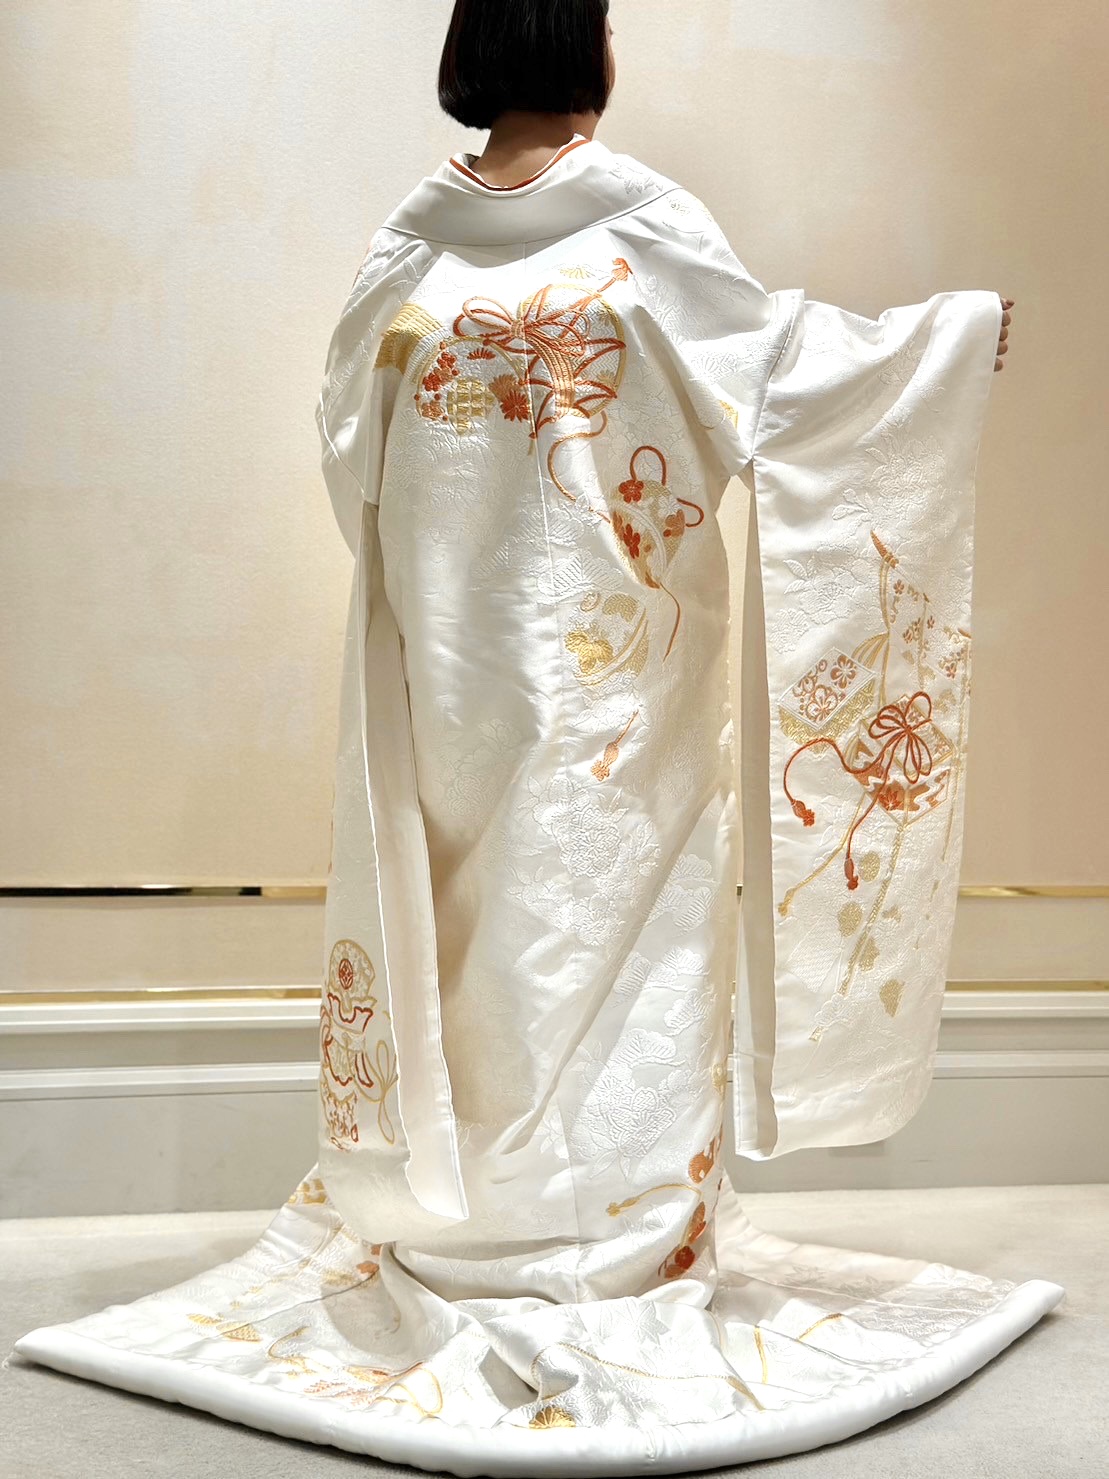 ザ トリート ドレッシング大阪店よりご紹介する善王寺織の華やかで立体的な新作の白無垢